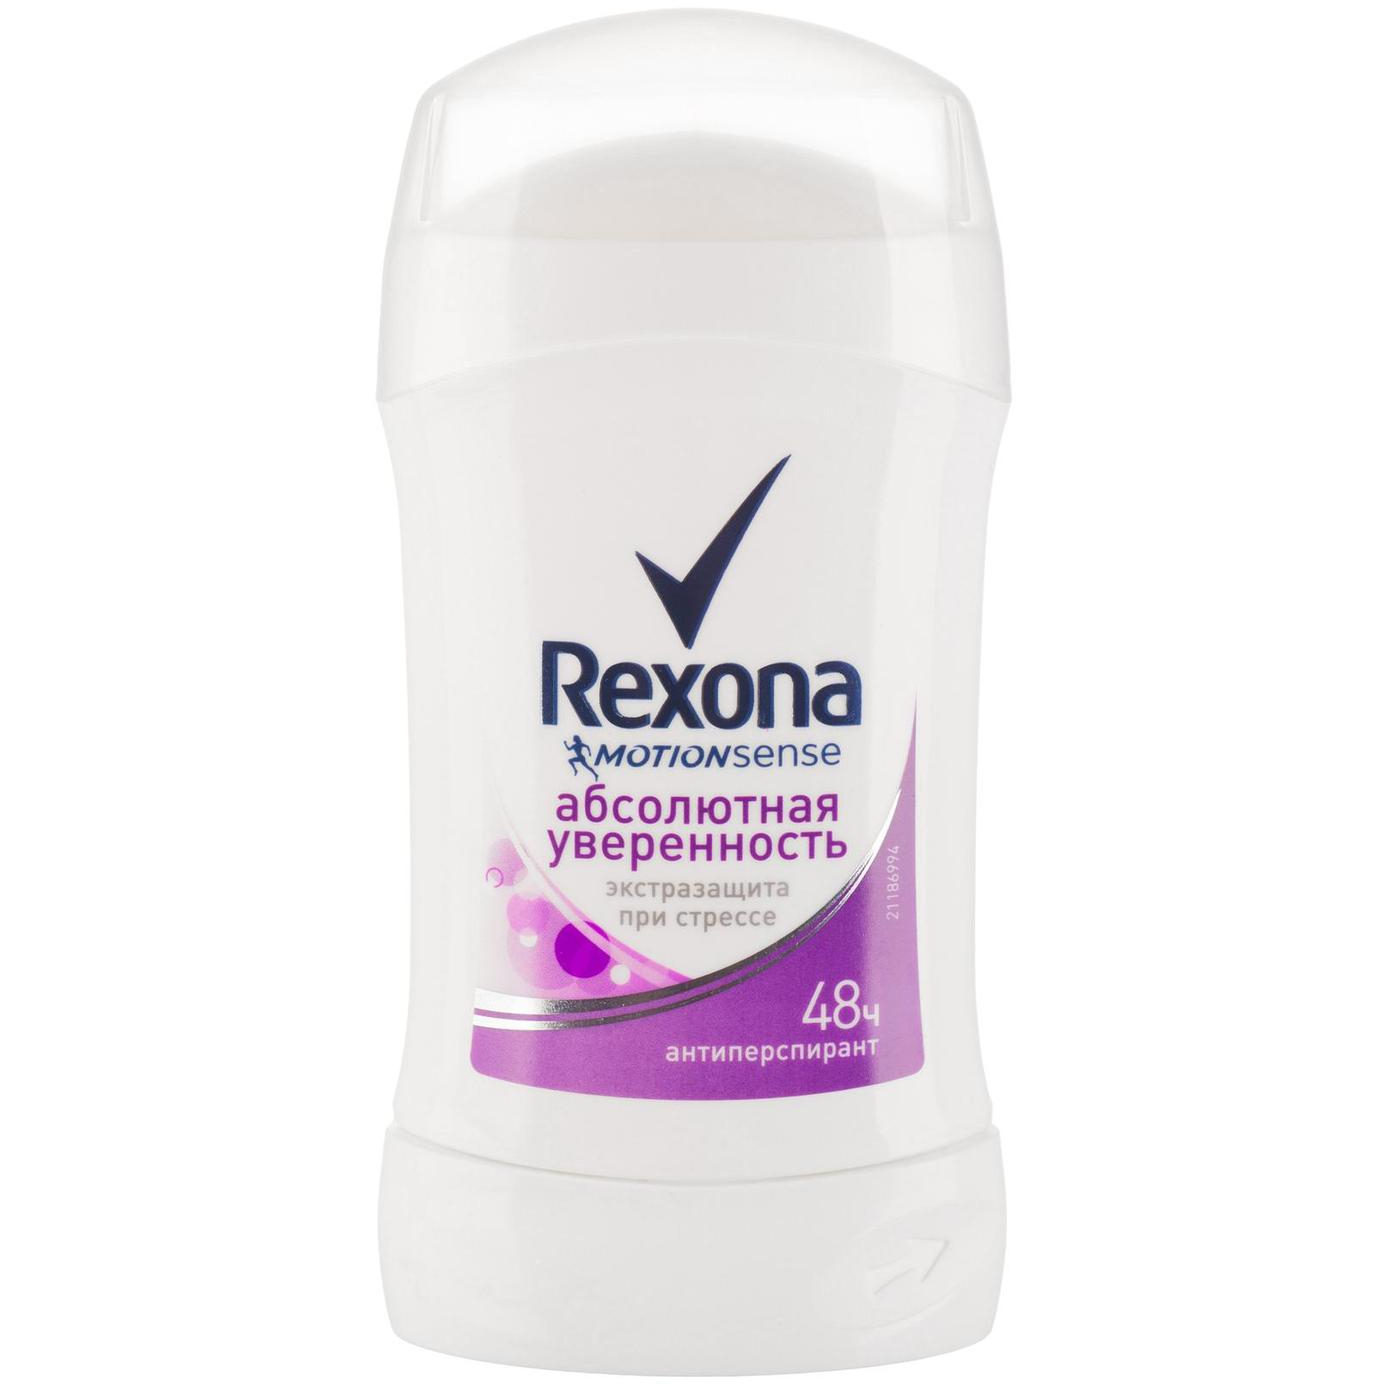 Дезодорант-антиперспирант стик Rexona Абсолютная уверенность 40 мл дезодорант стик rexona антибактериальная свежесть 40мл